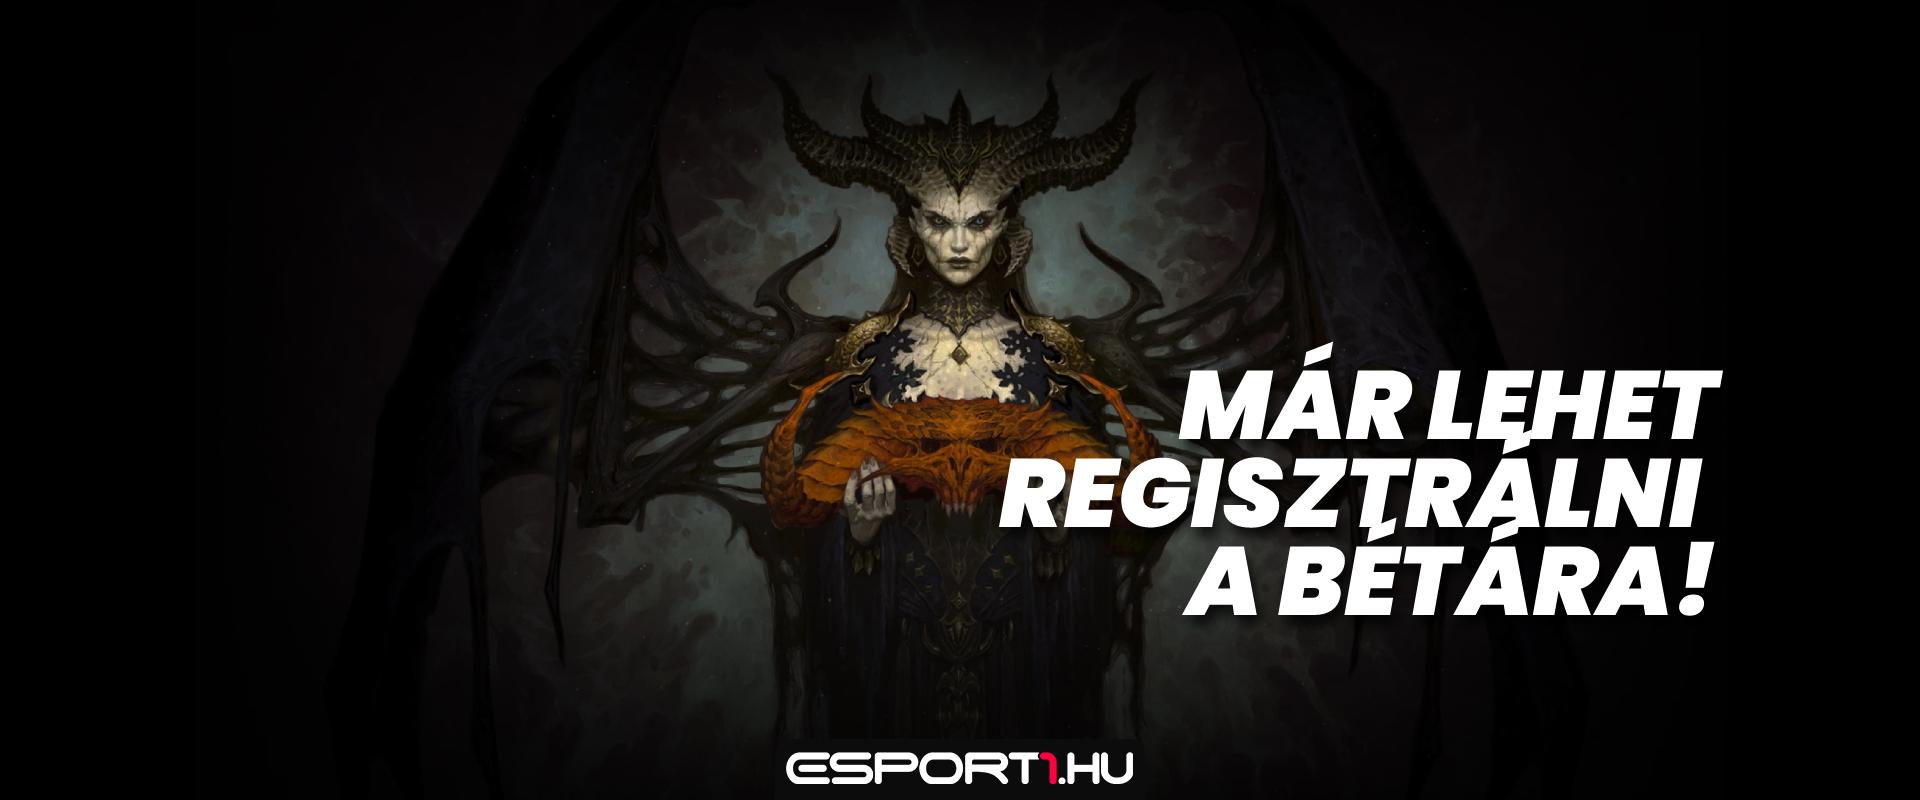 Elindult a regisztráció a Diablo IV bétatesztjére!